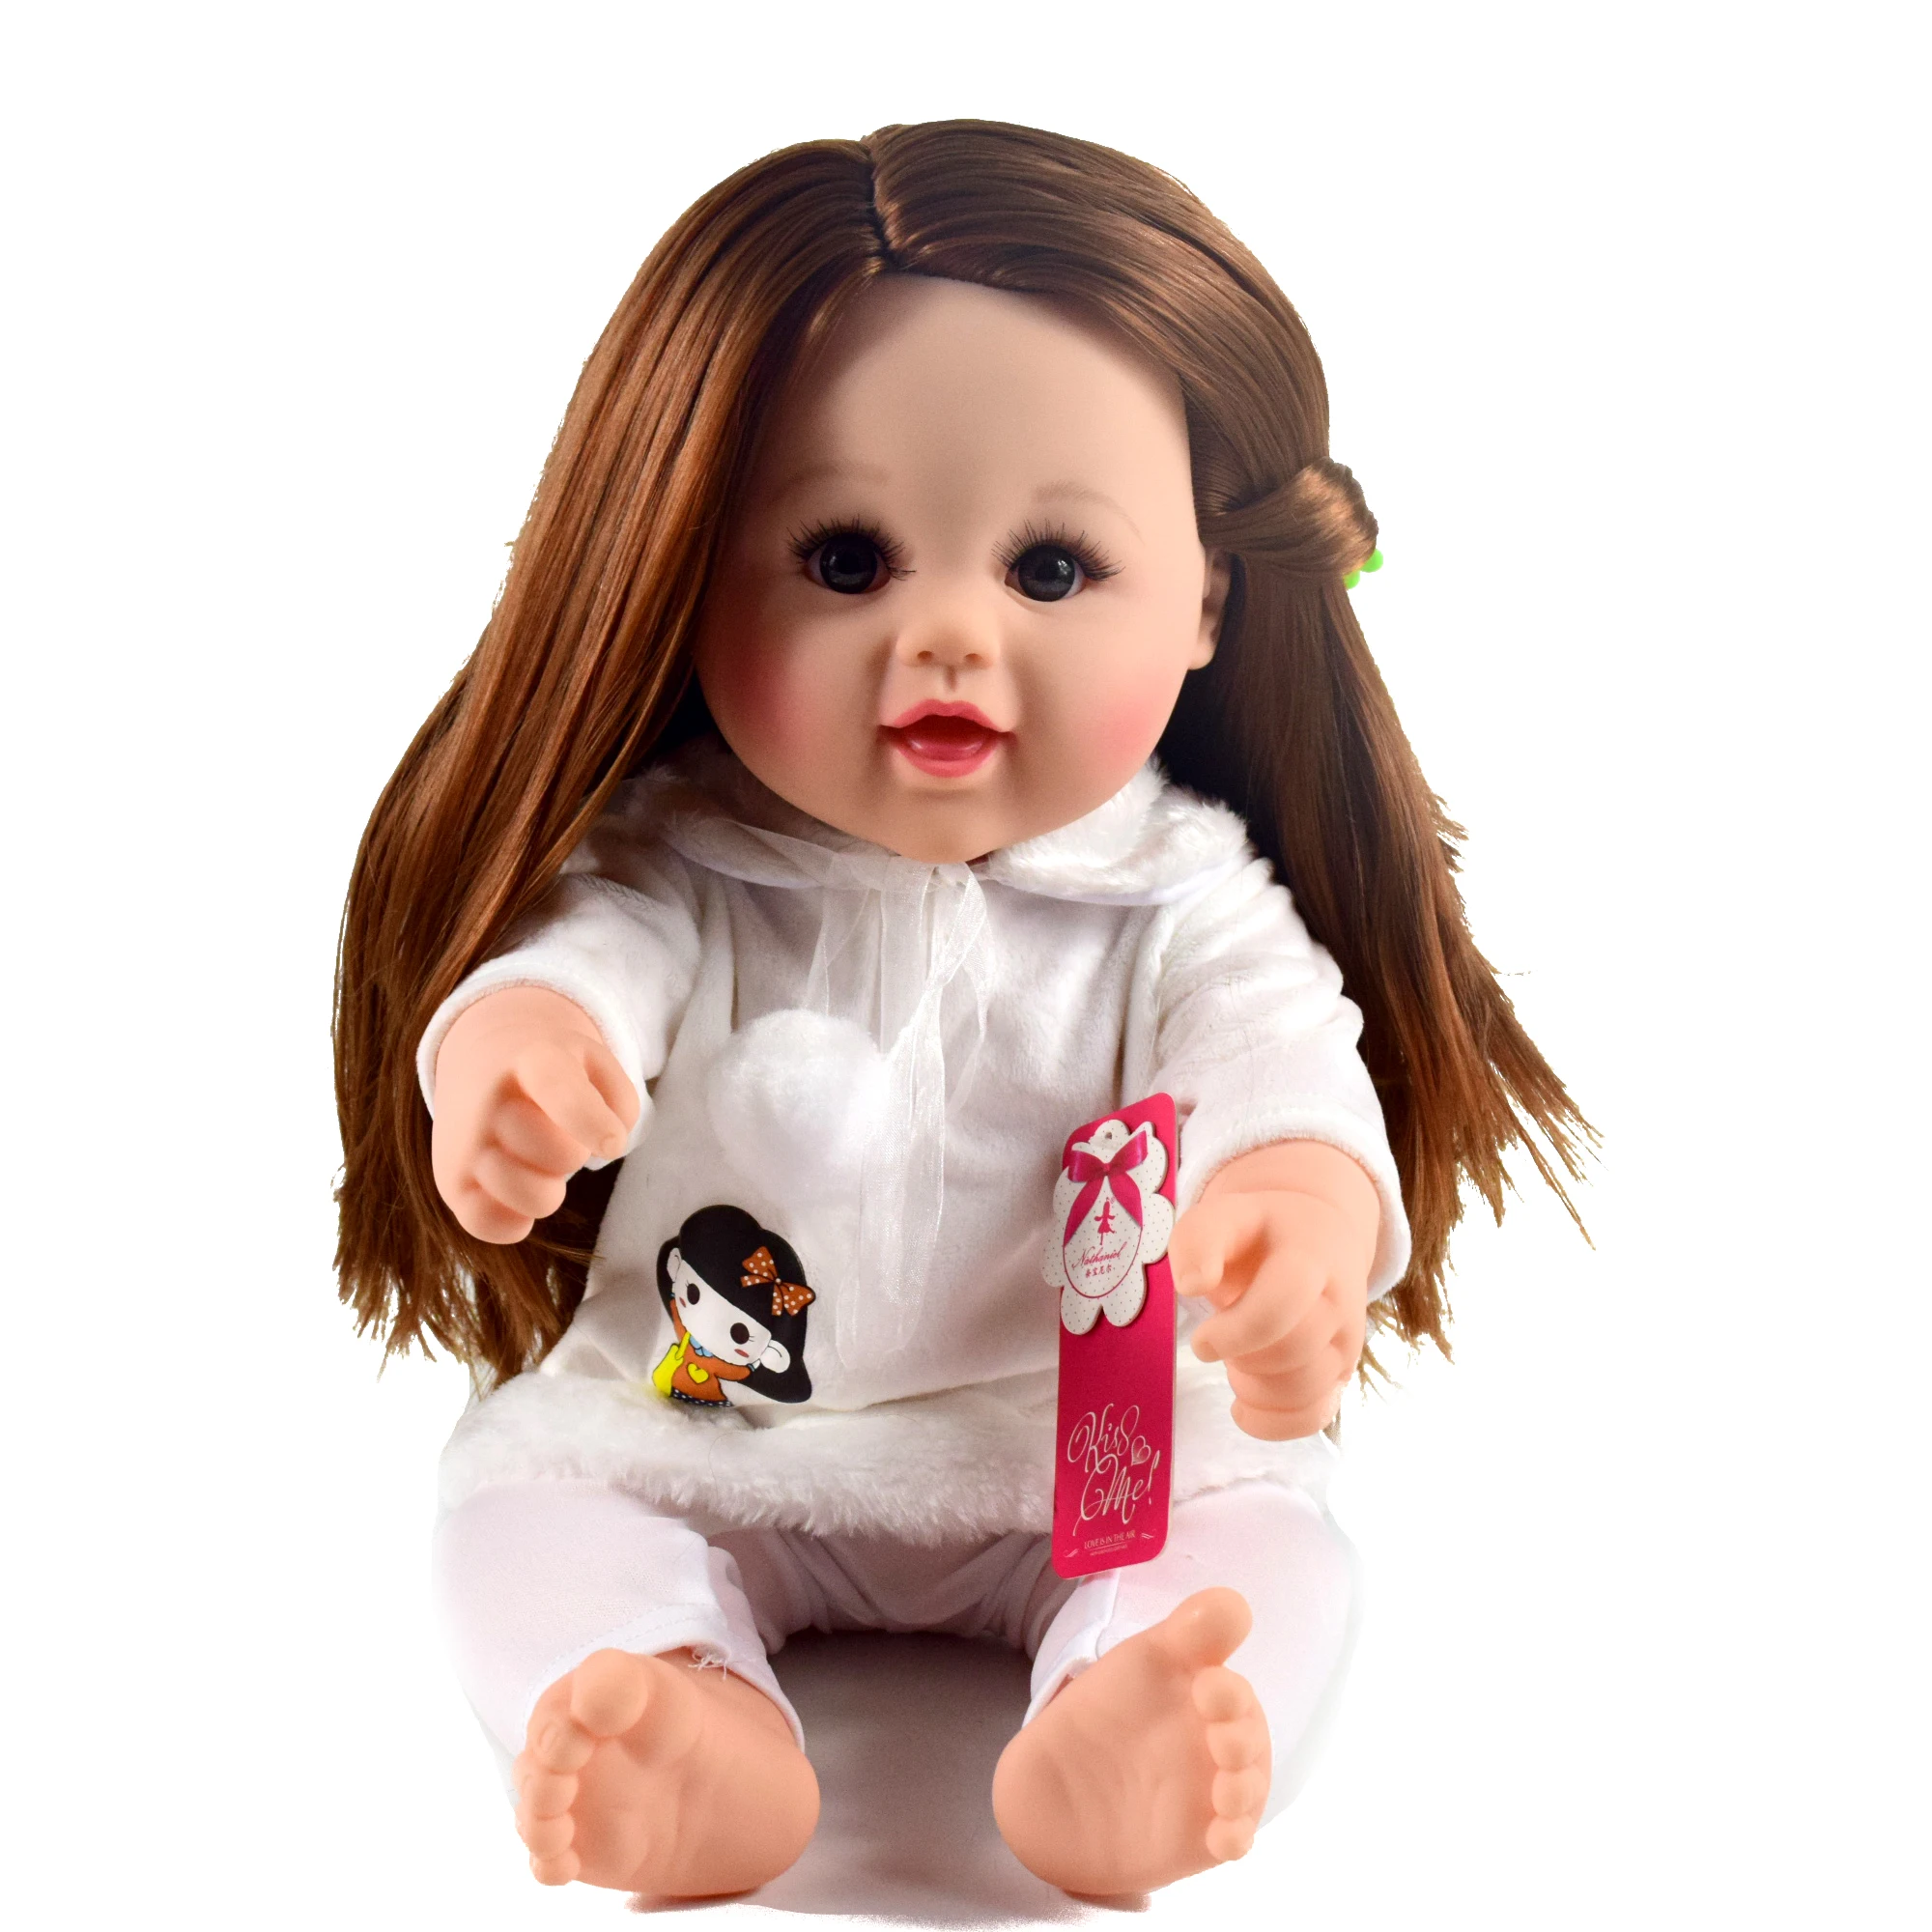 教育玩具风格塑料婴儿娃娃 18 英寸女孩娃娃为儿童